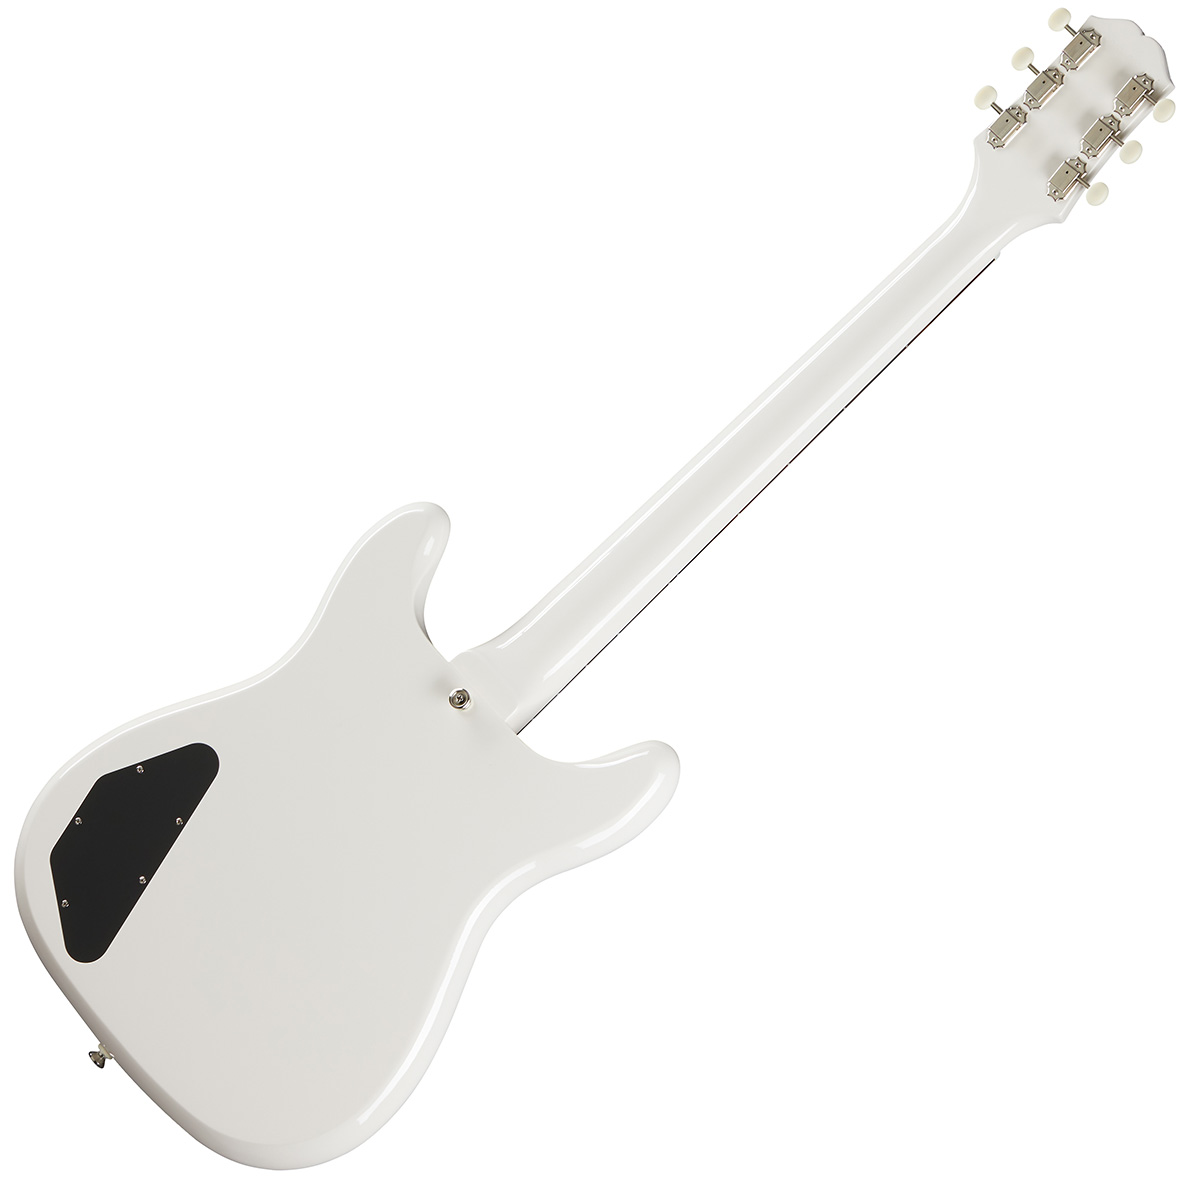 Epiphone Crestwood Custom Polaris White エレキギター ホワイト